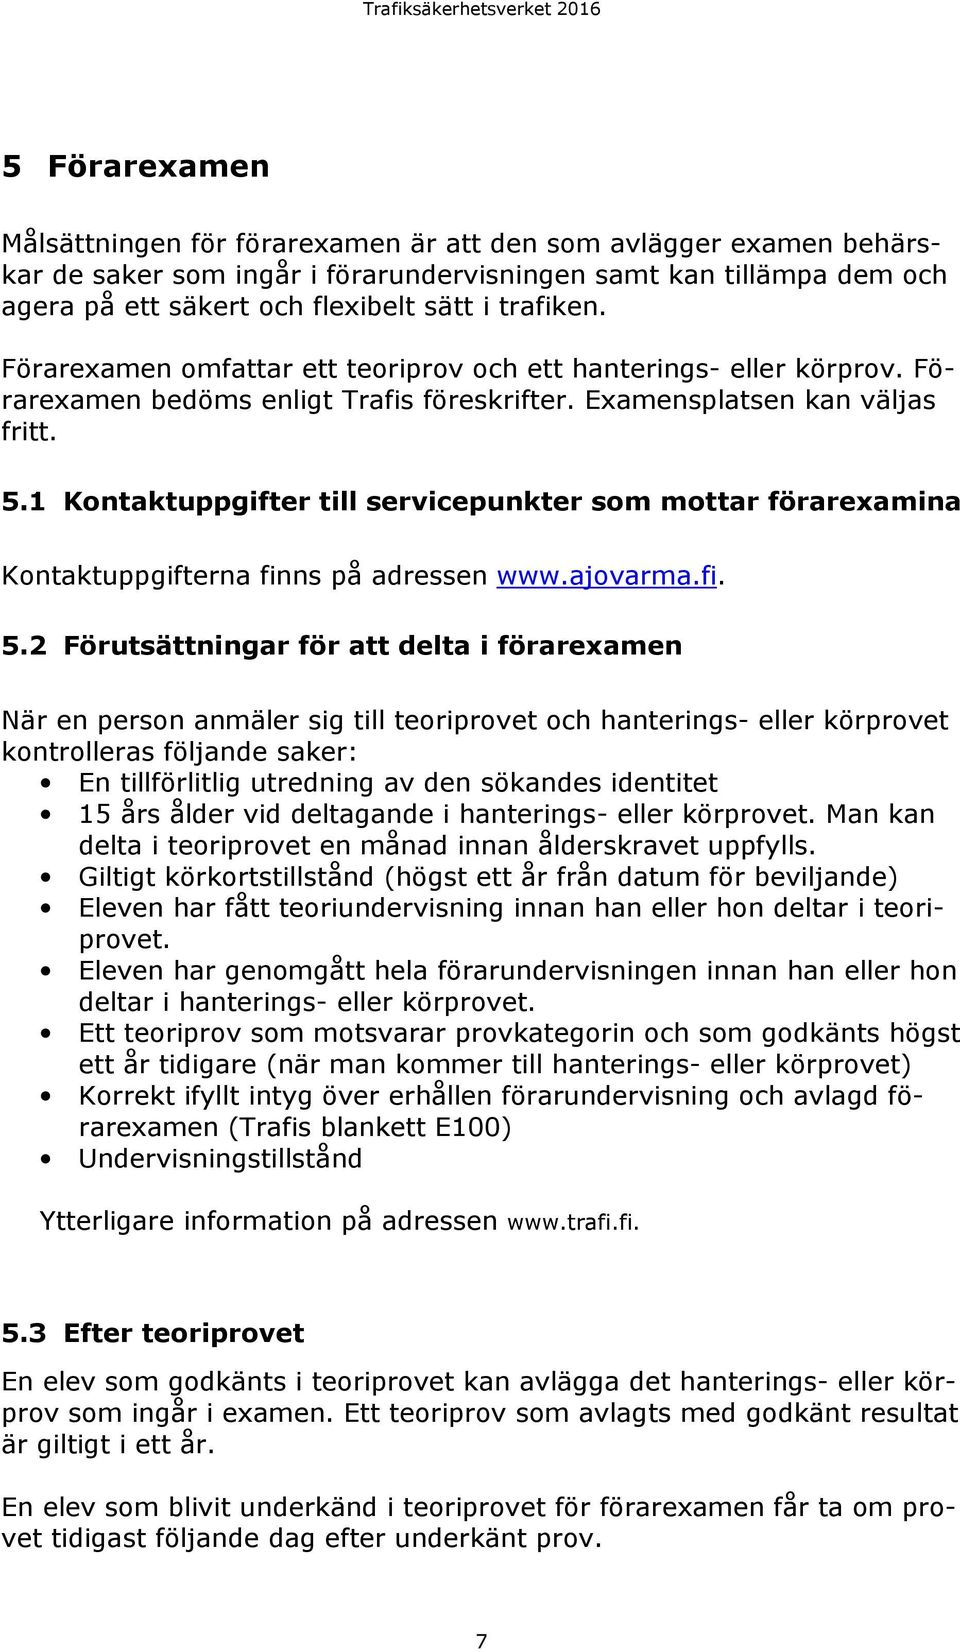 1 Kontaktuppgifter till servicepunkter som mottar förarexamina Kontaktuppgifterna finns på adressen www.ajovarma.fi. 5.